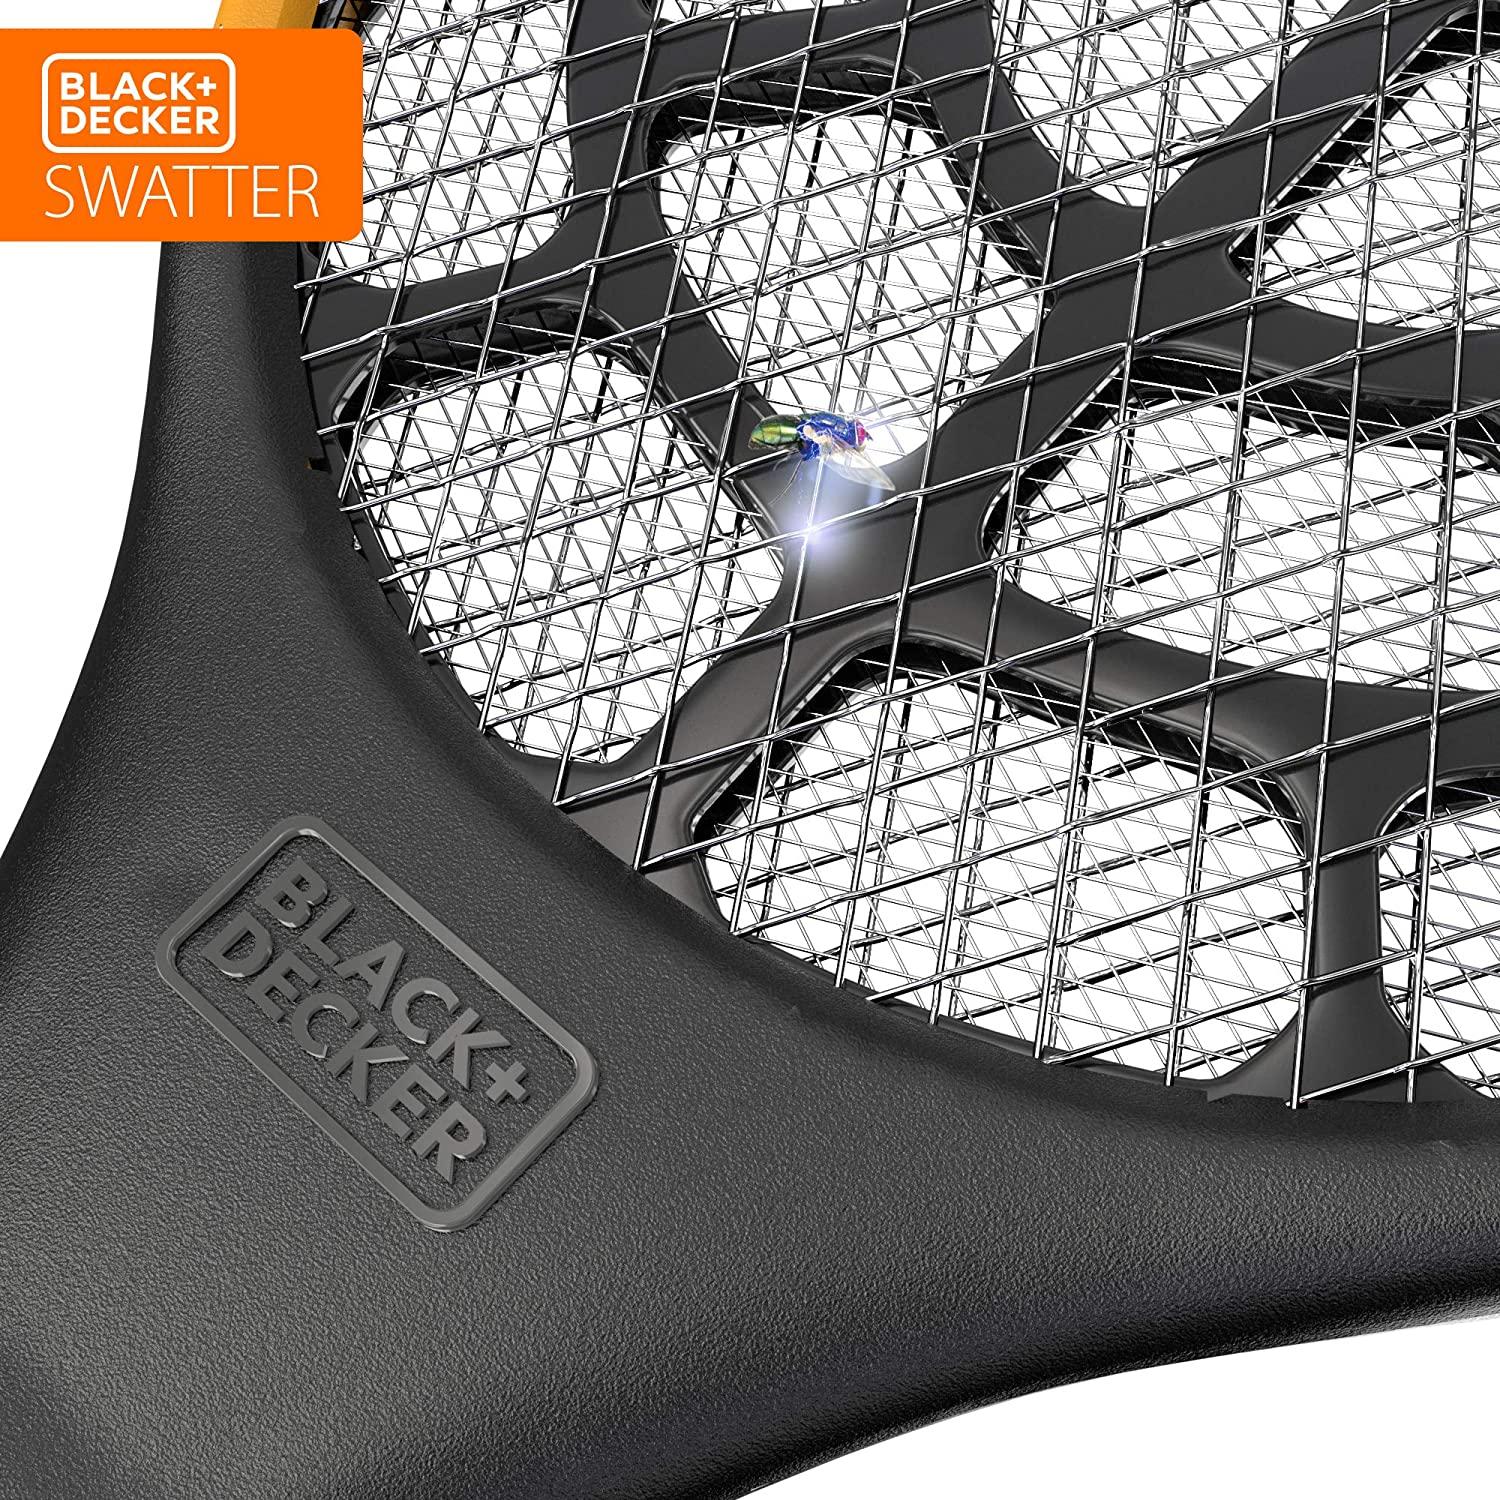 BLACKDECKER Electric Fly Swatter- Fly Zapper- Tennis Brazil